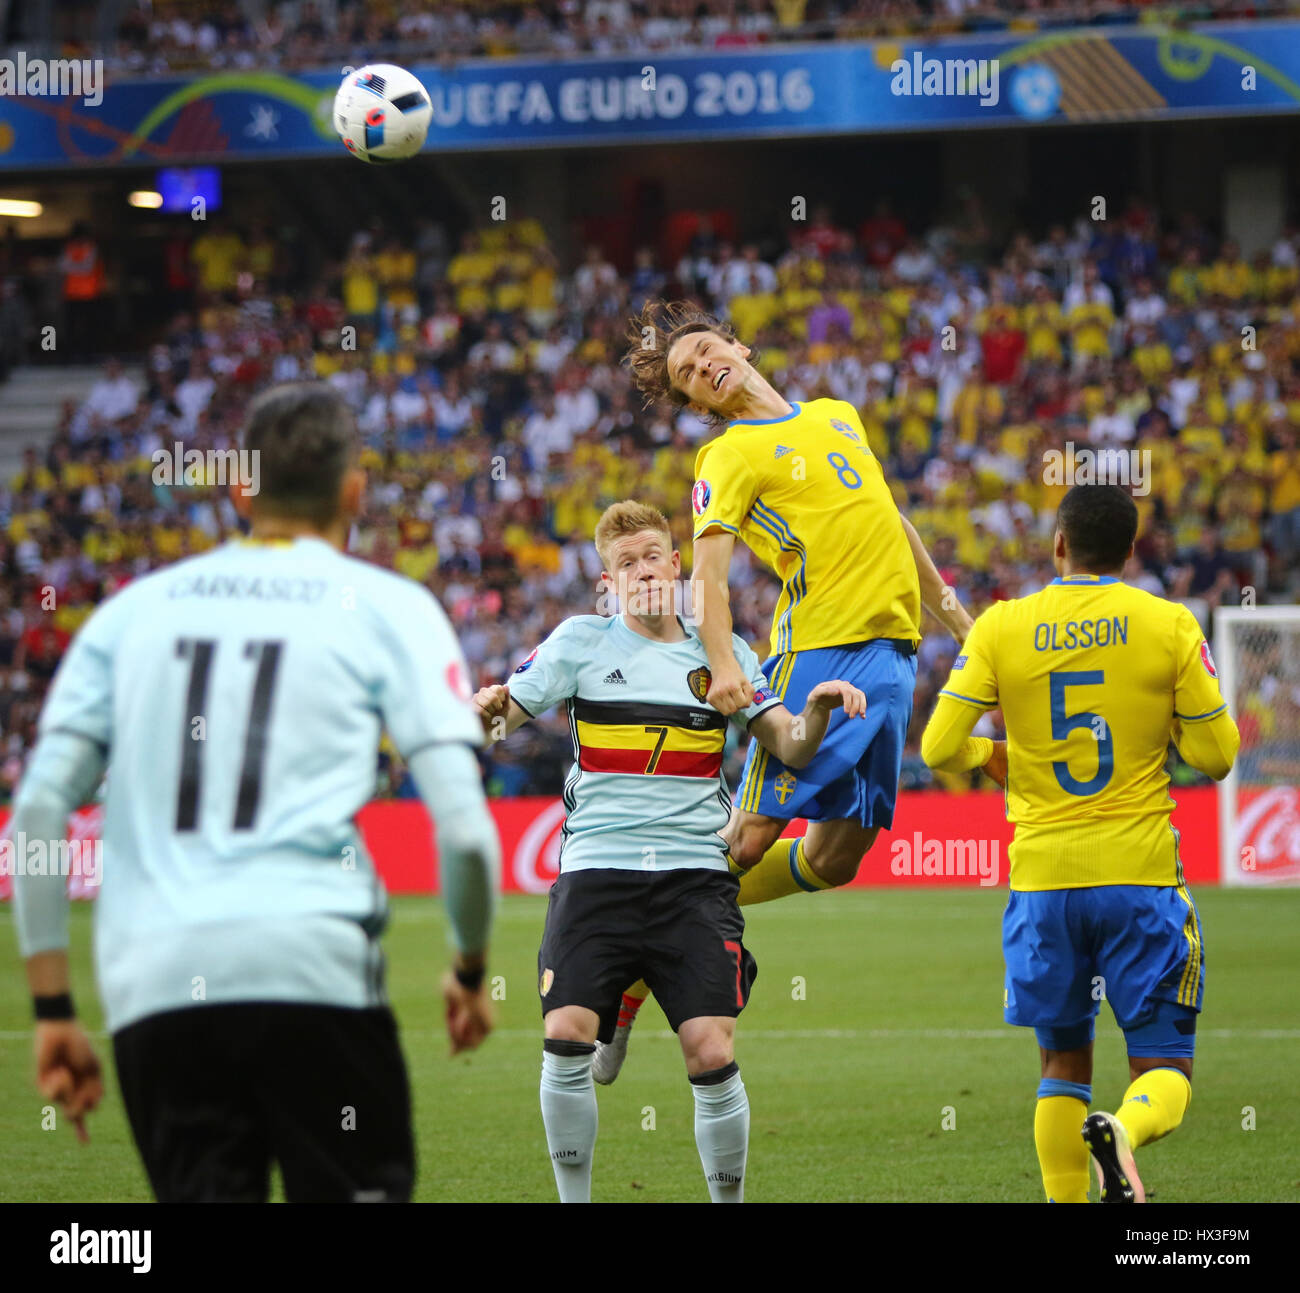 Nizza, Francia - 22 giugno 2016: svedese (in giallo) e il belga i giocatori combattono gli uni con gli altri per una sfera durante il loro UEFA EURO 2016 gioco a Allianz Riv Foto Stock